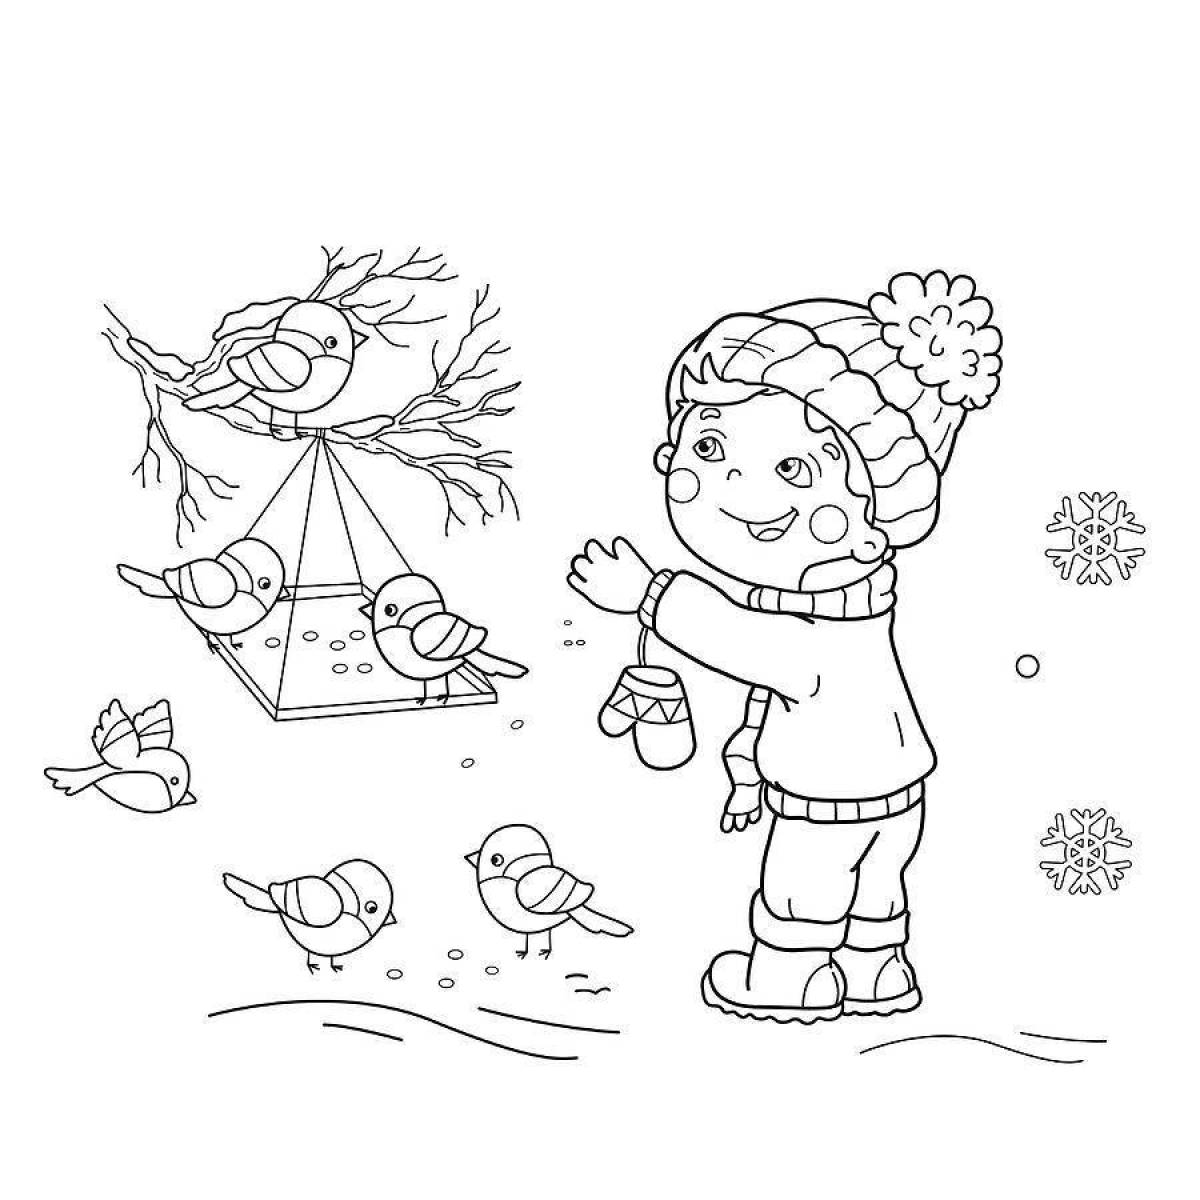 Whimsical presentation of birds in winter for children